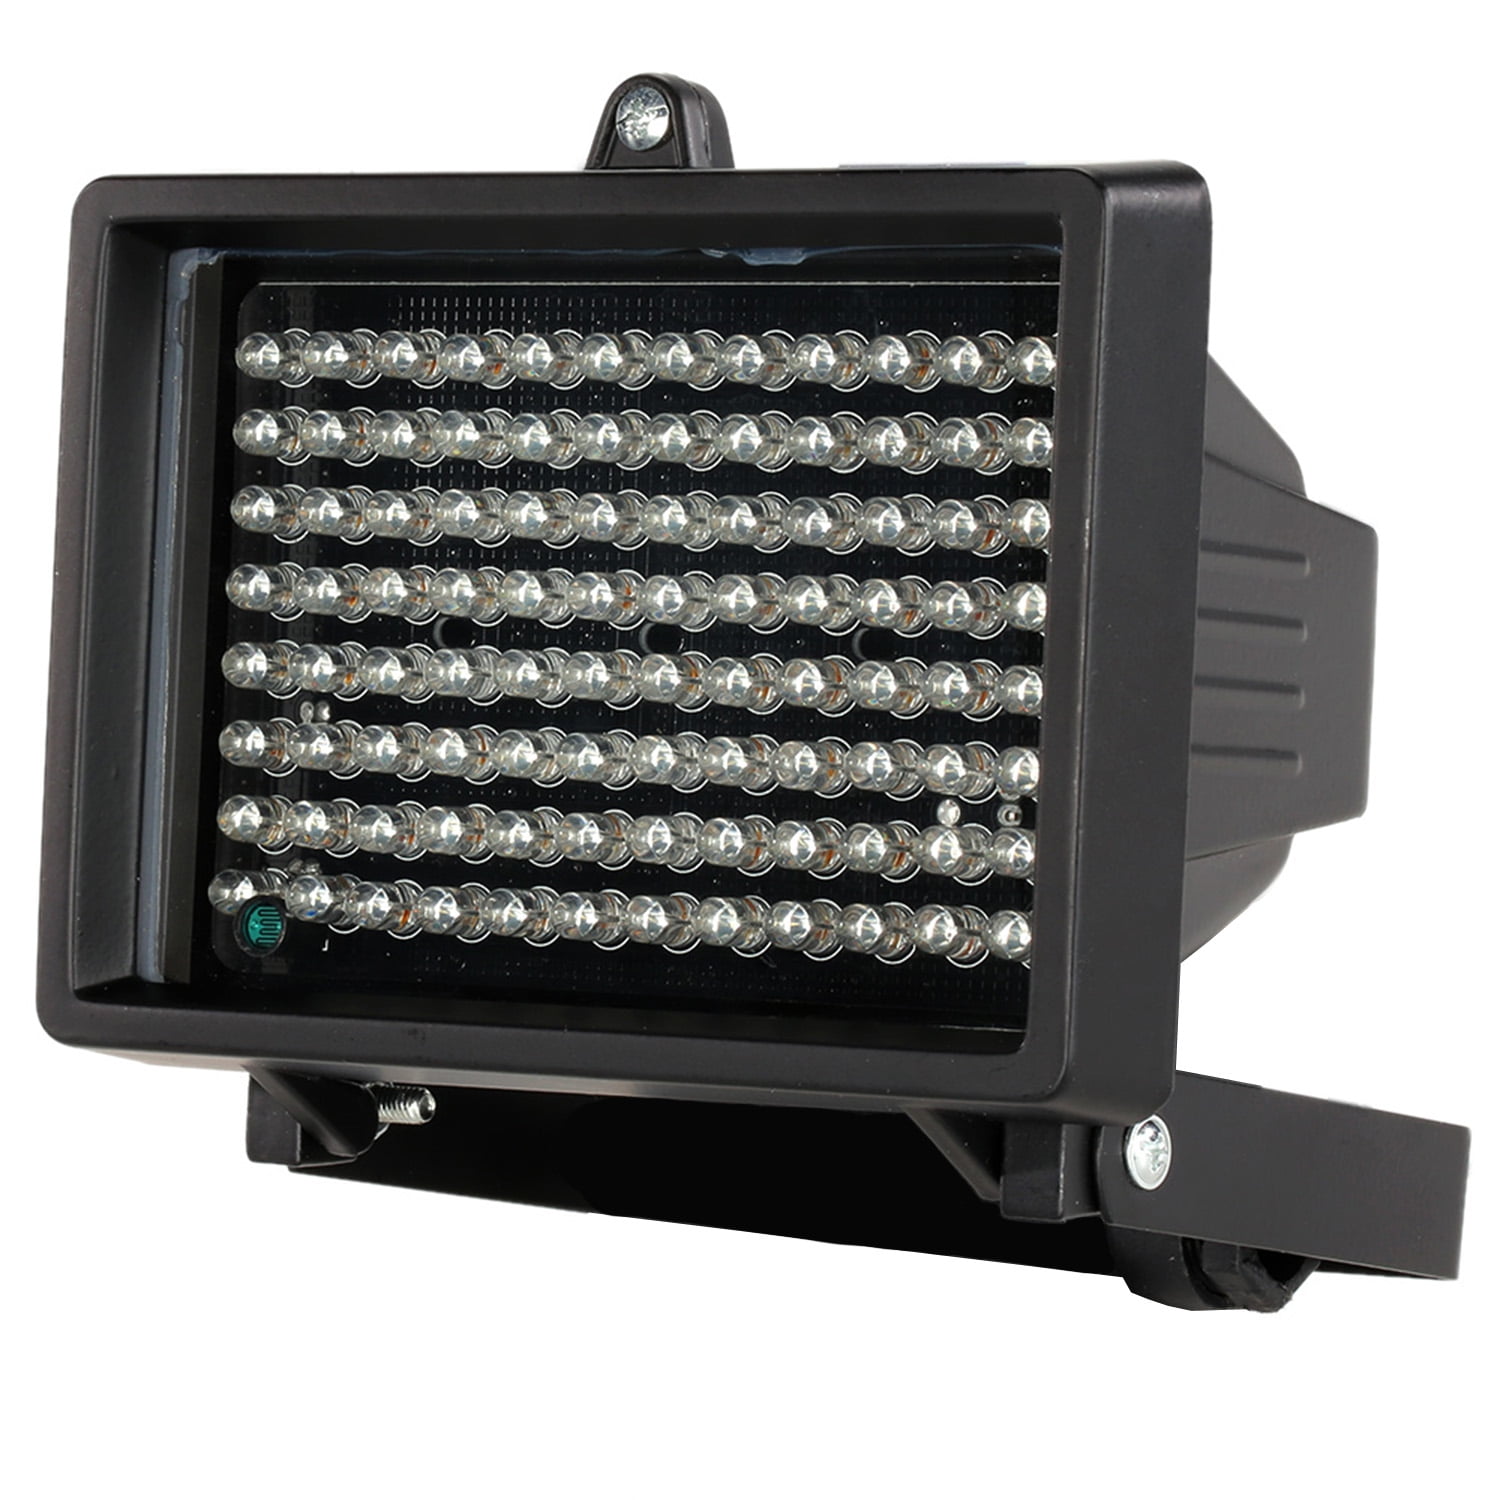 96 LED Light 45 Degree Night Vision IR Infrared Illuminator lamp For CCTV Camera 